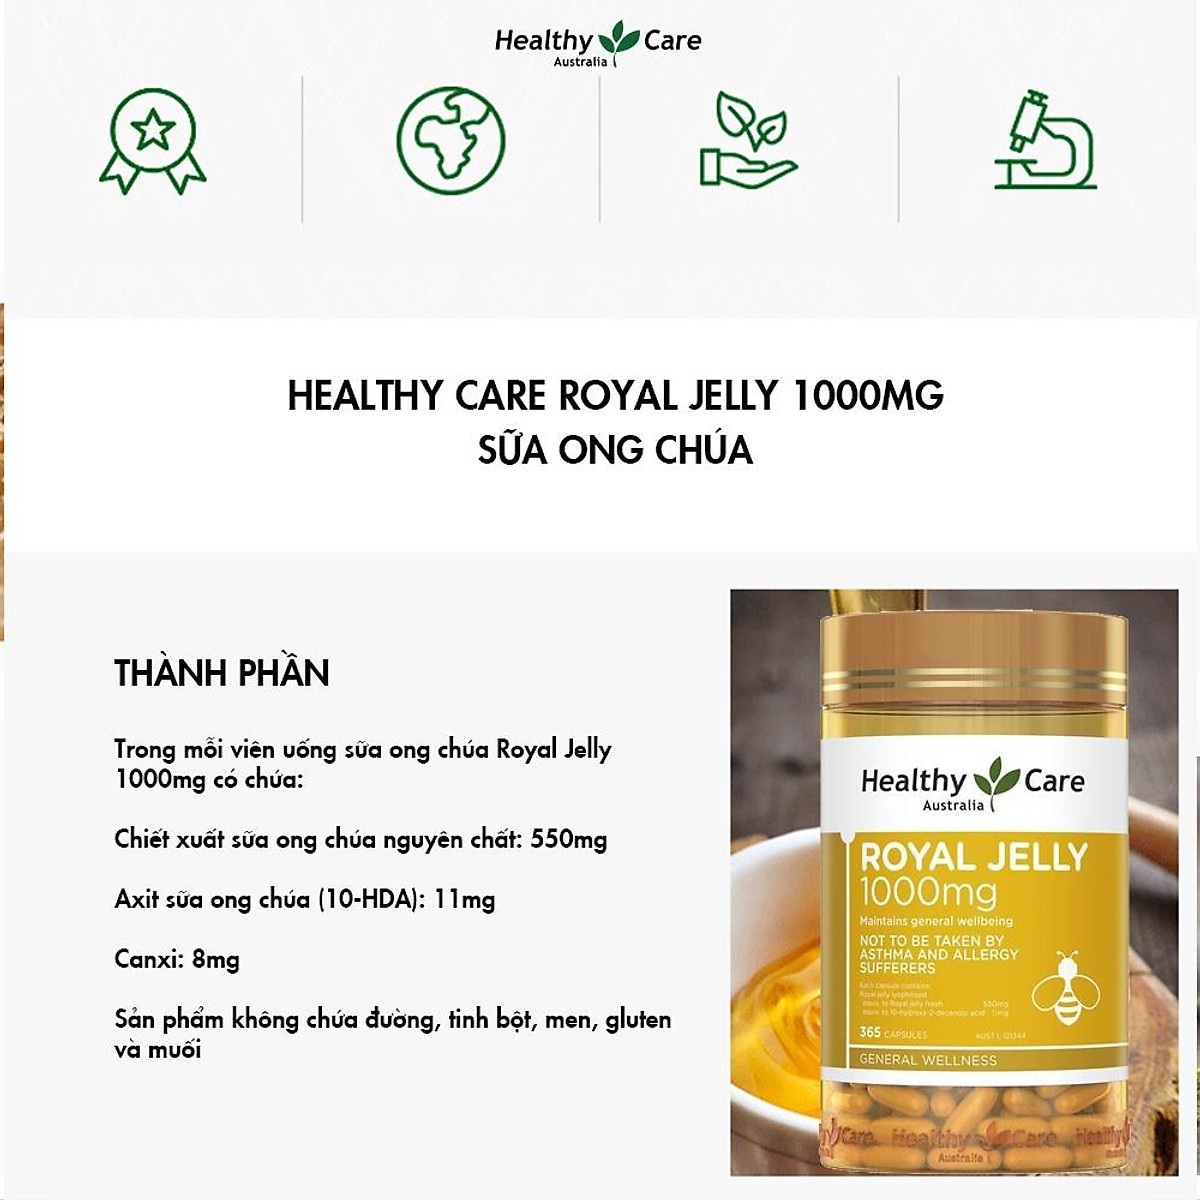 Hình ảnh Sữa Ong chúa Healthy Care Royal Jelly Úc Hỗ trợ đẹp da, làm chậm quá trình lão hóa, giảm nám, tàn nhanh, tăng sức khỏe tổng thể - OZ Slim Store